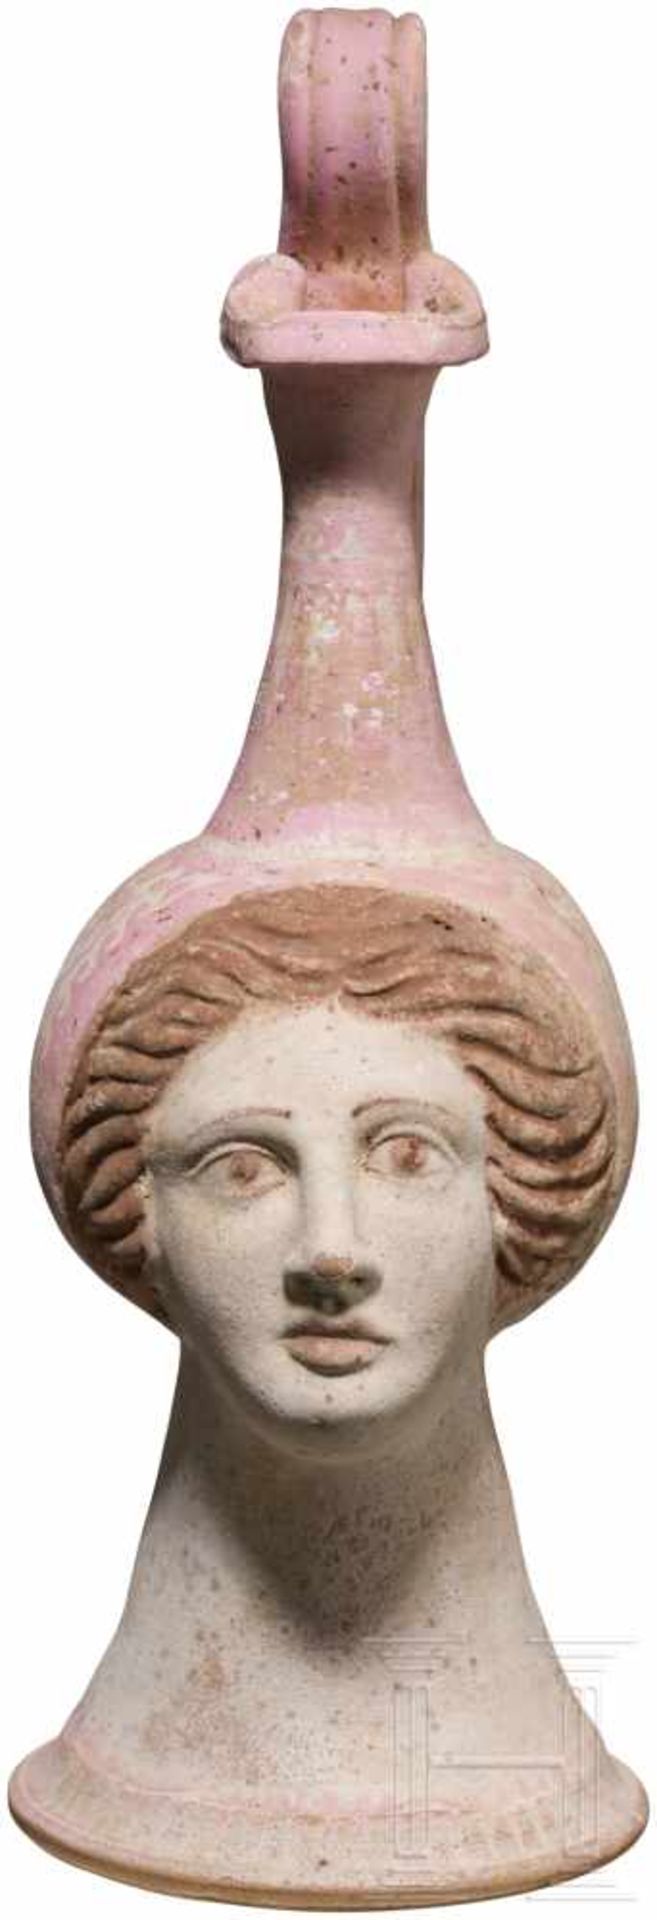 Polychrome Oinochoe mit plastischem Antlitz einer Dame, Canosa, Unteritalien, 4. Jhdt. v. Chr. - Bild 4 aus 9